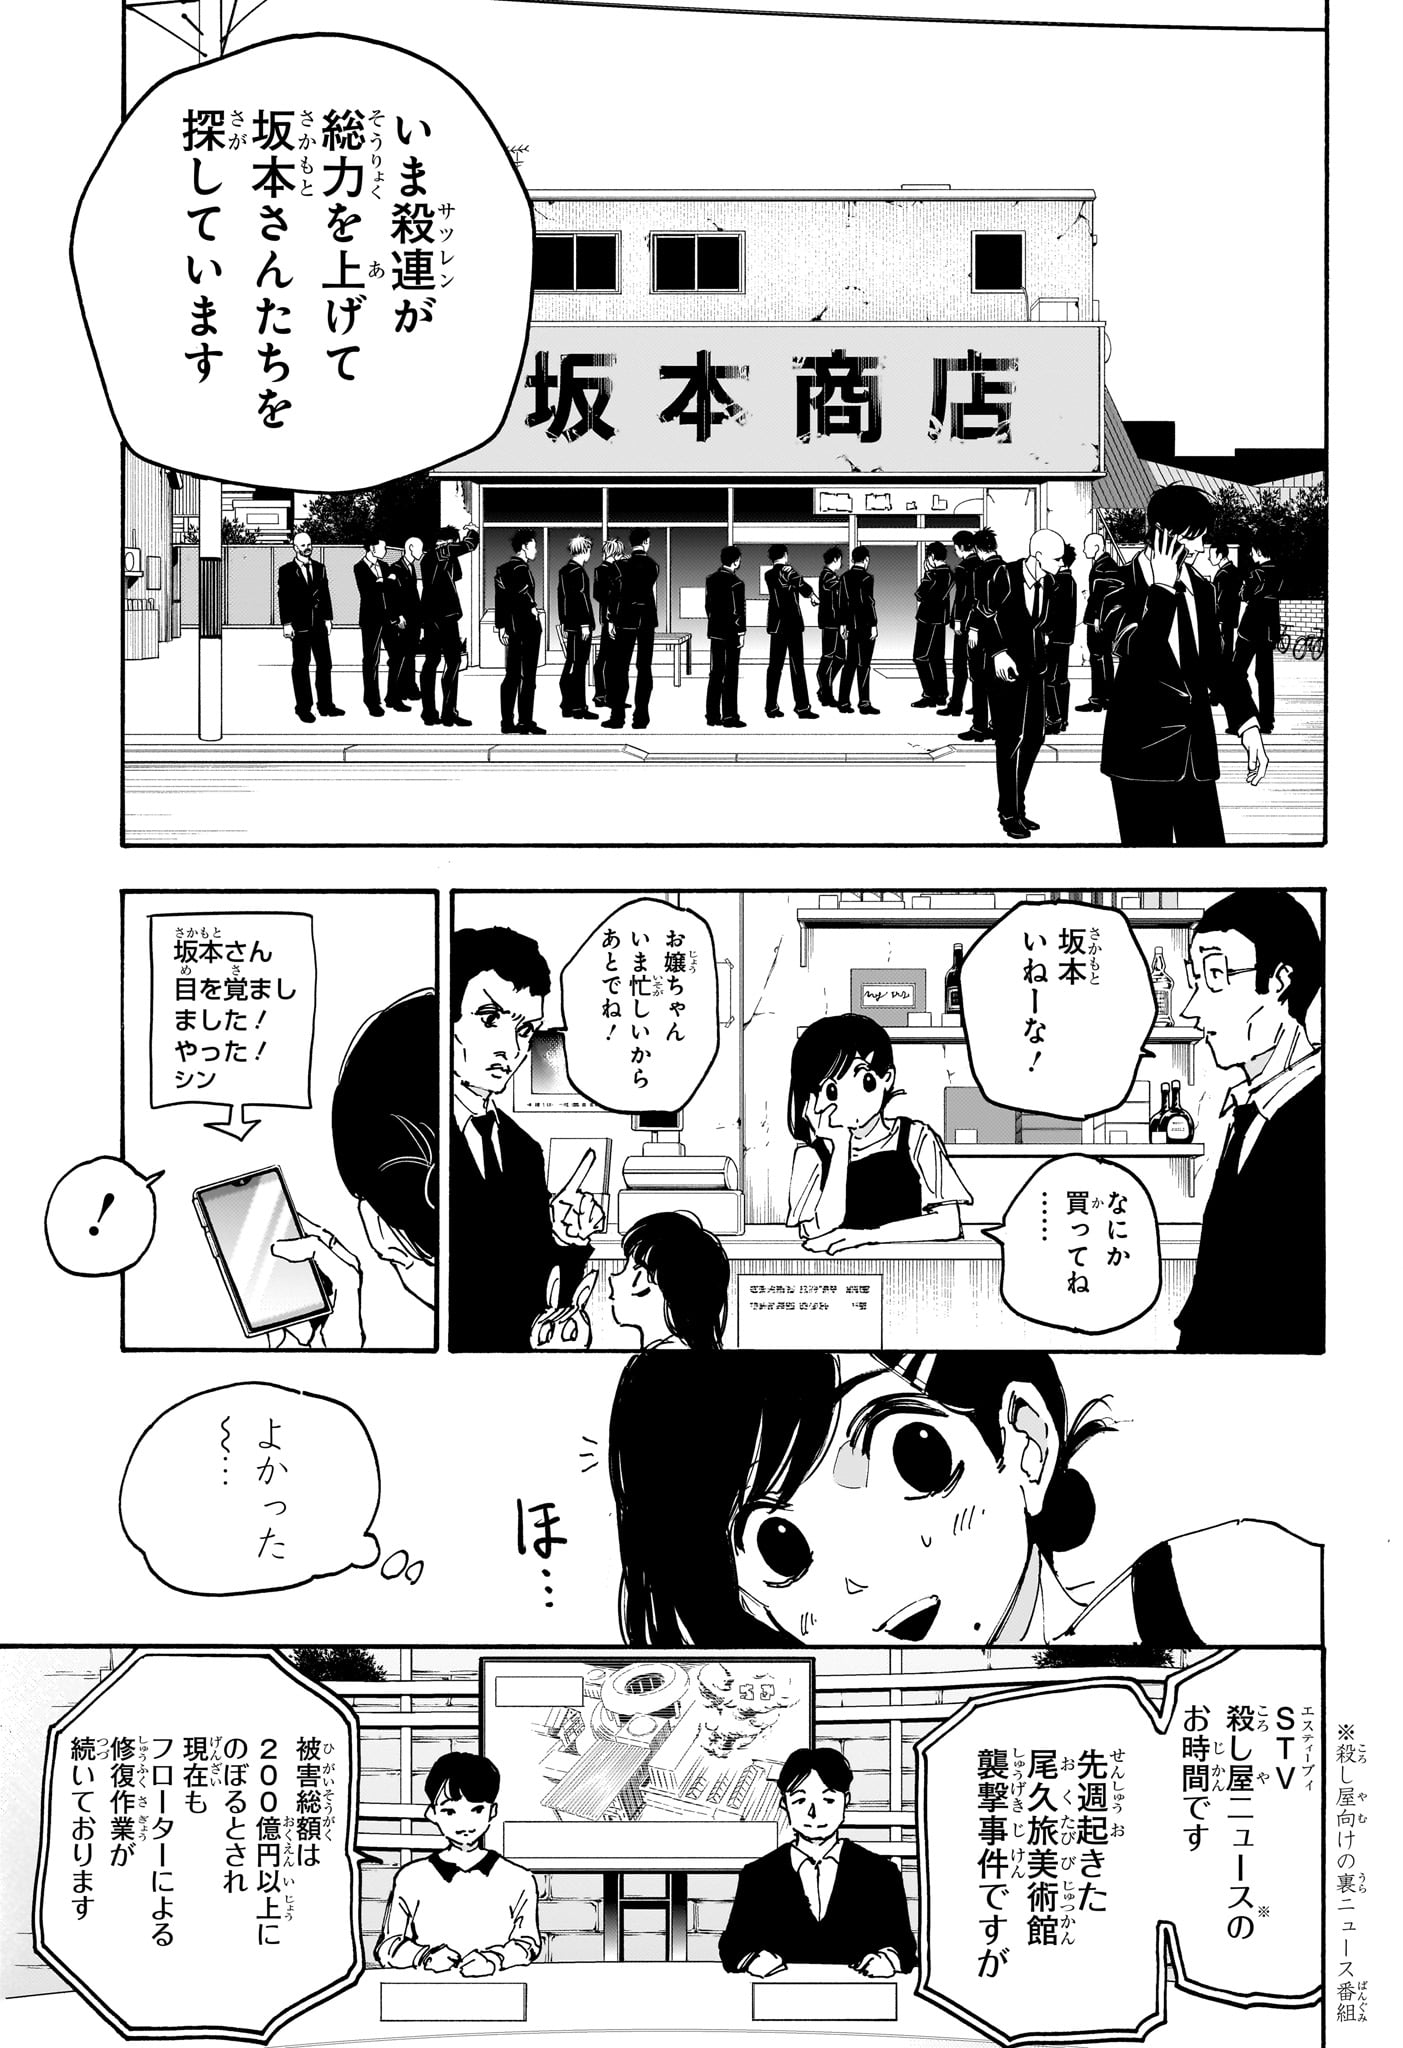 Sakamoto Days - Chapter 168 - Page 11